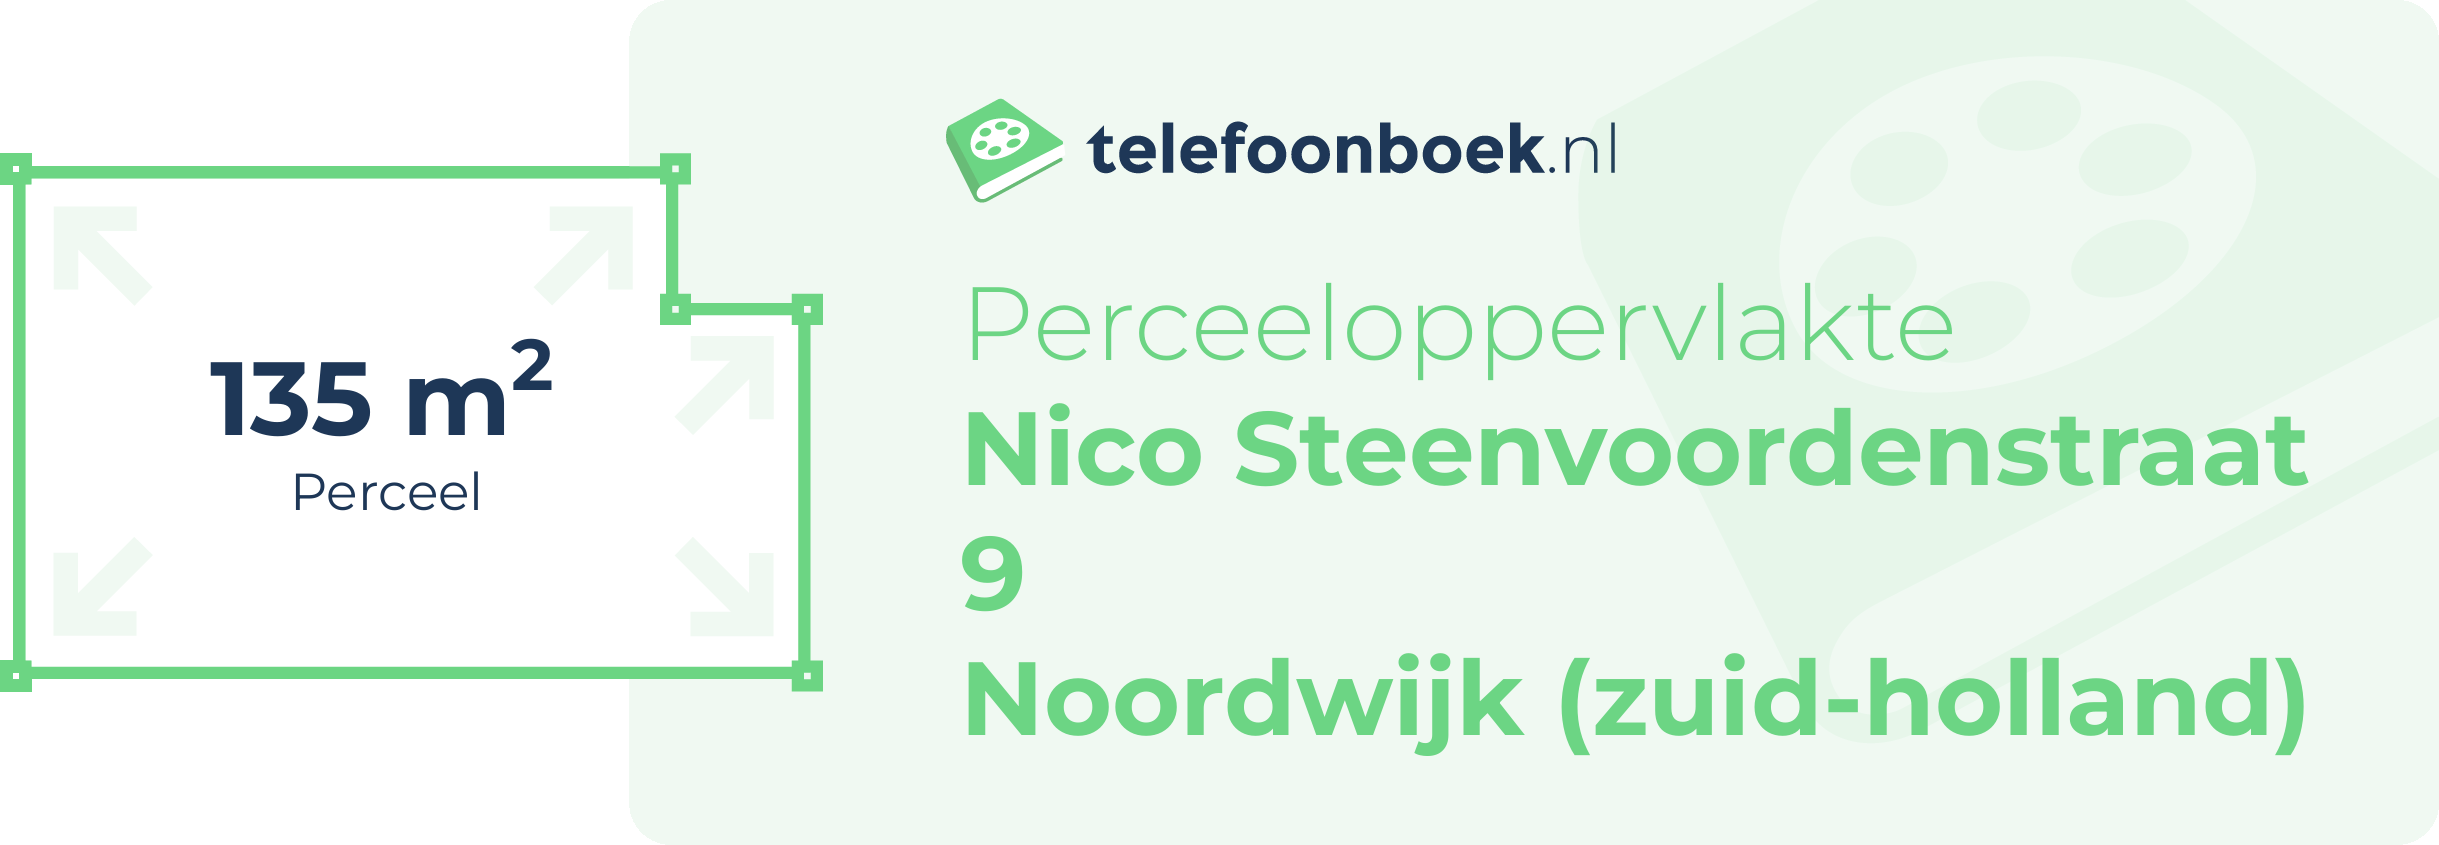 Perceeloppervlakte Nico Steenvoordenstraat 9 Noordwijk (Zuid-Holland)